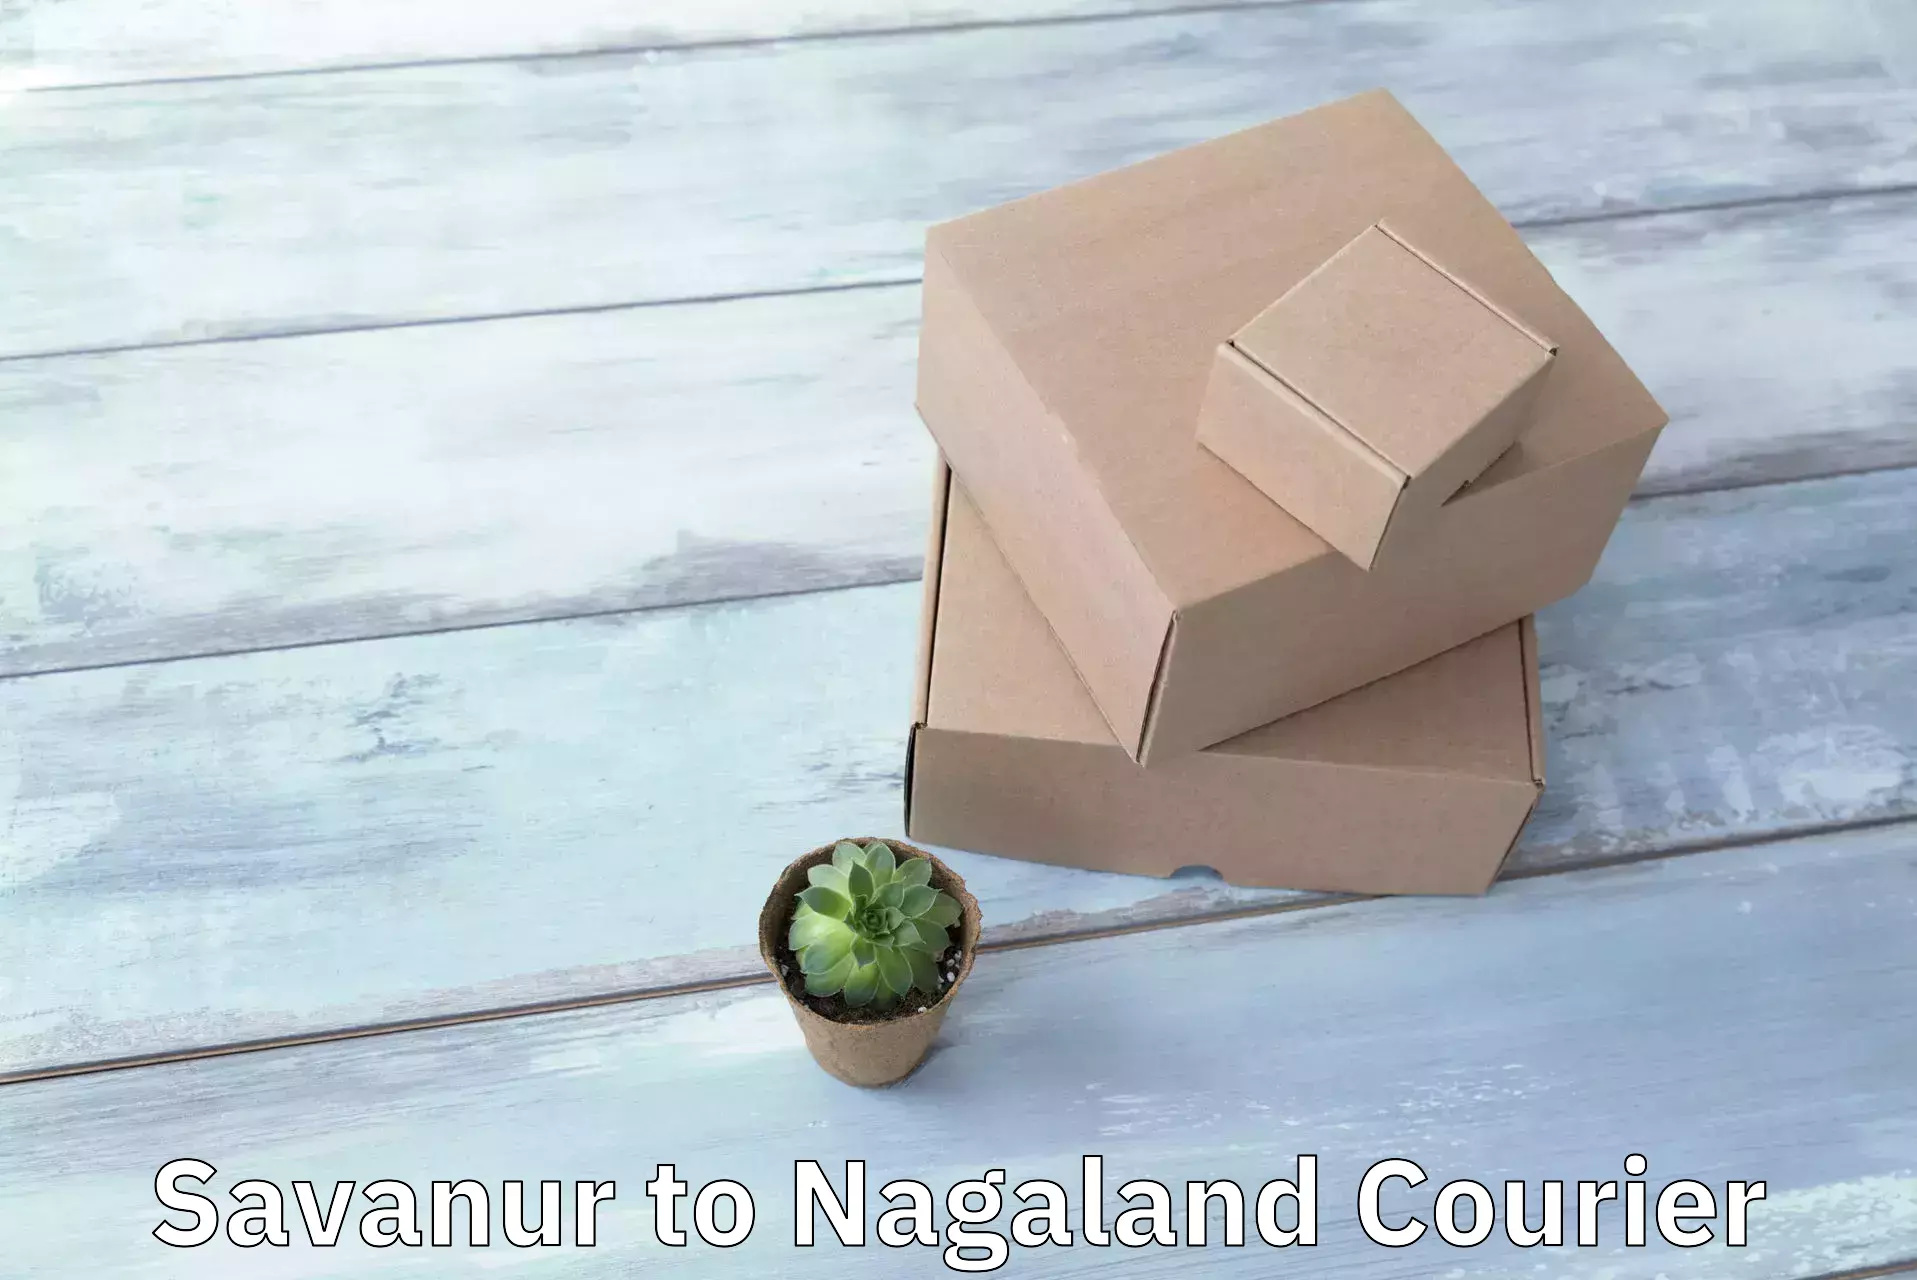 Efficient cargo handling Savanur to Nagaland